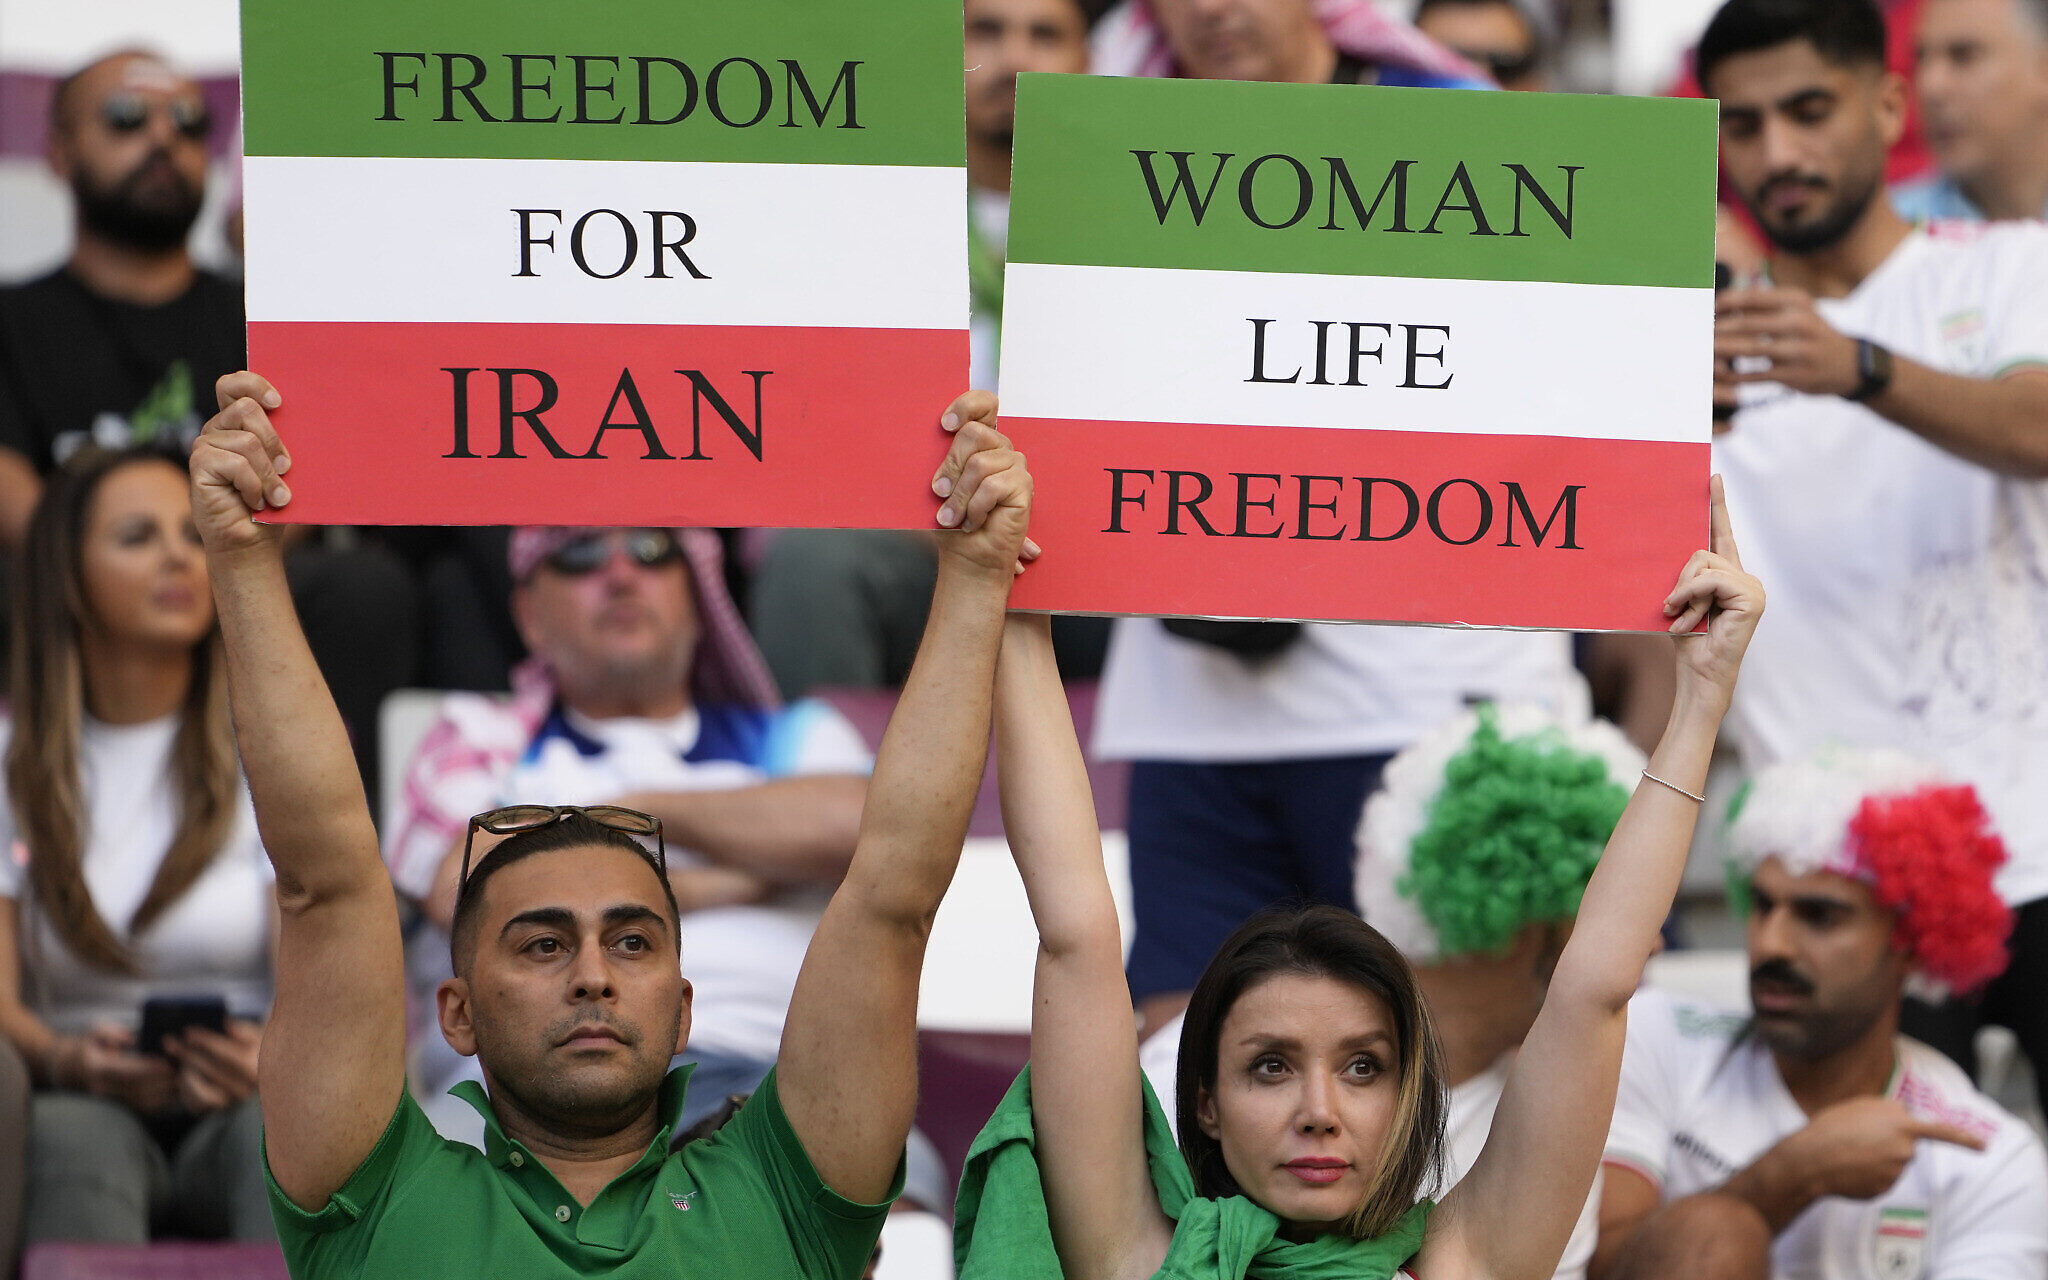 Ιράν, Ποδόσφαιρο και Επανάσταση: Το απαγορευμένο για τις γυναίκες άθλημα